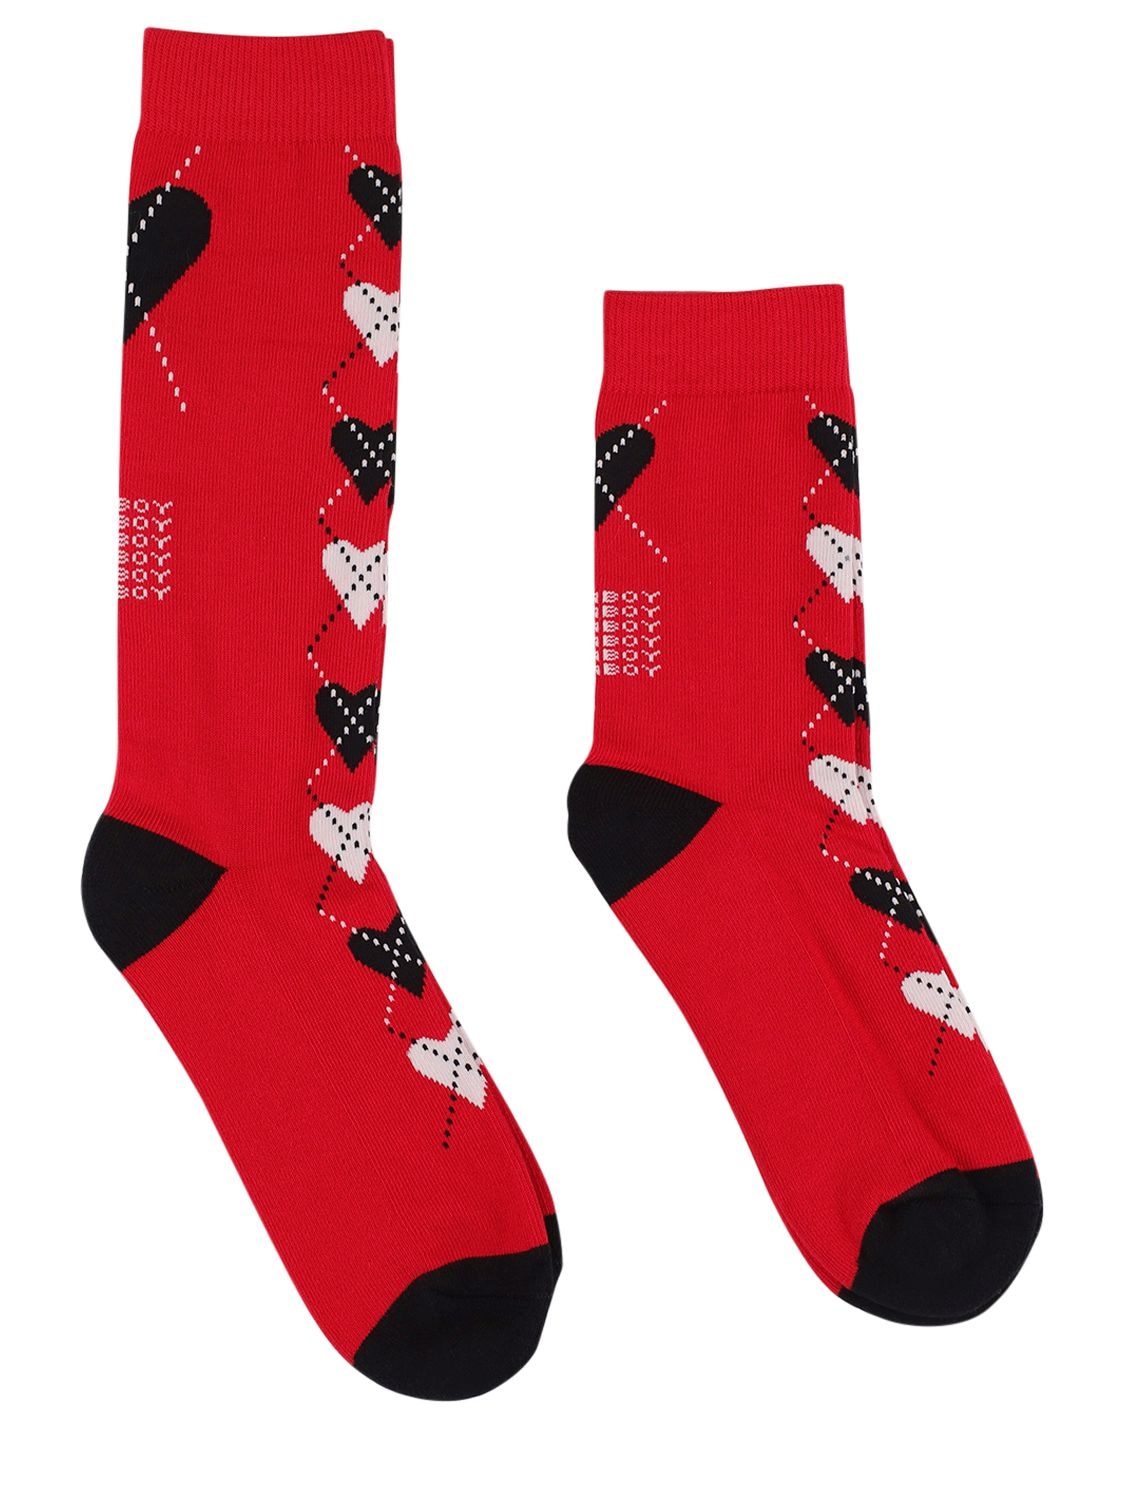 Charles Jeffrey Loverboy Pack Of 2 Logo Cotton Blend Short Socks In Red,black